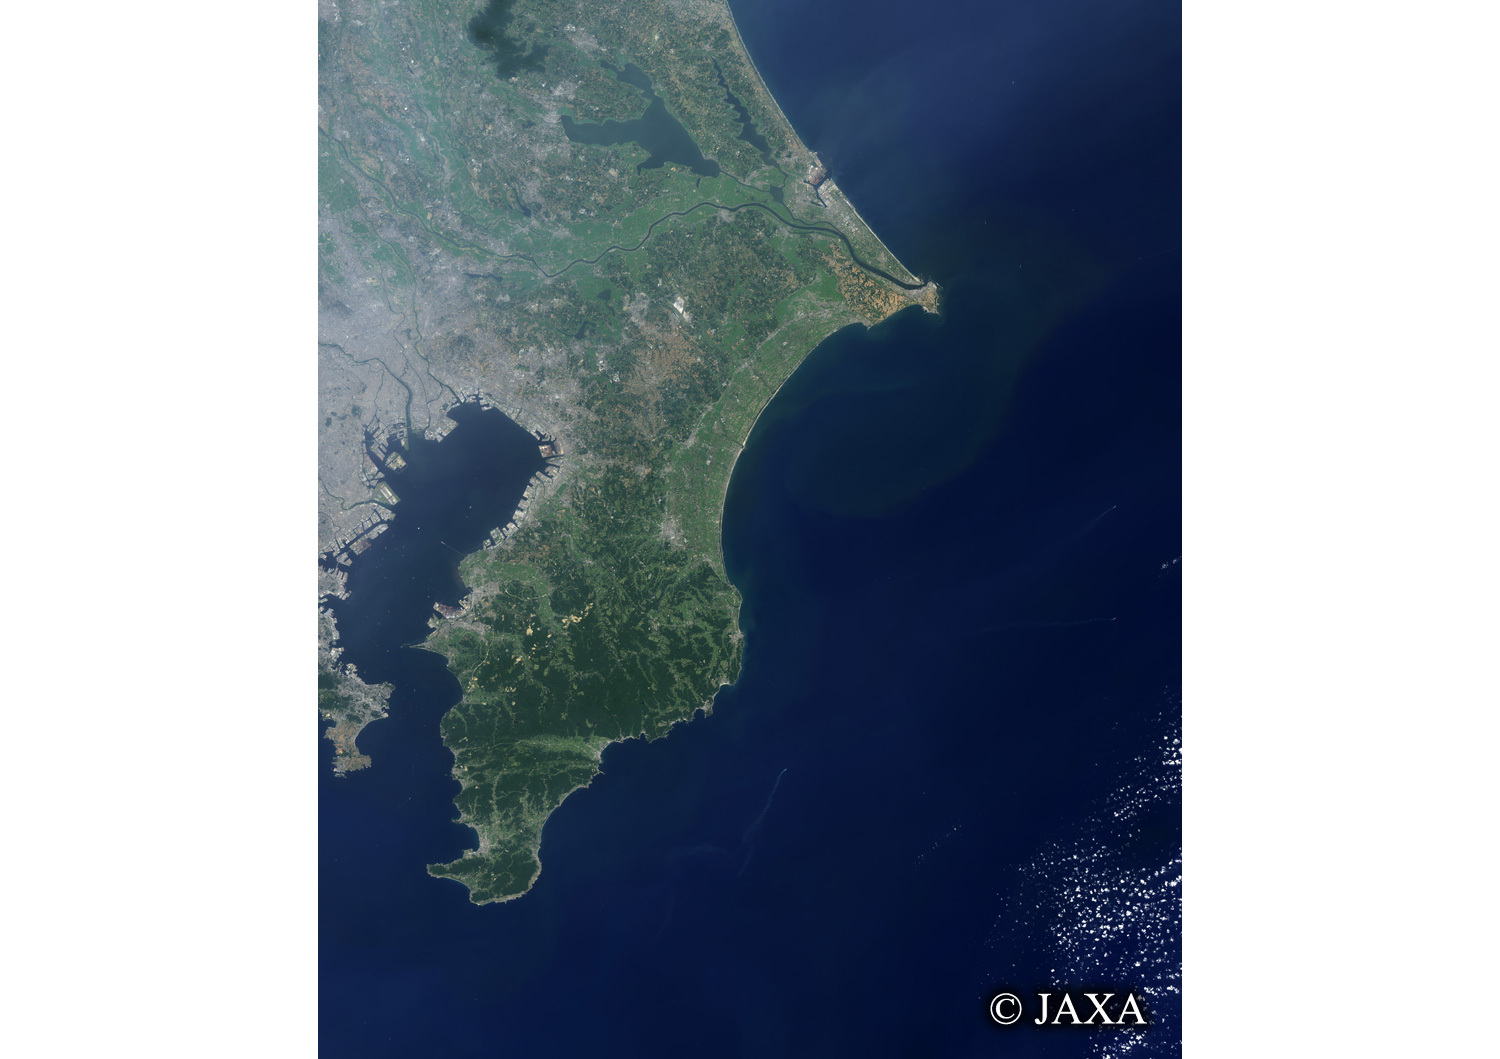 だいちから見た日本の都市 房総半島:衛星画像